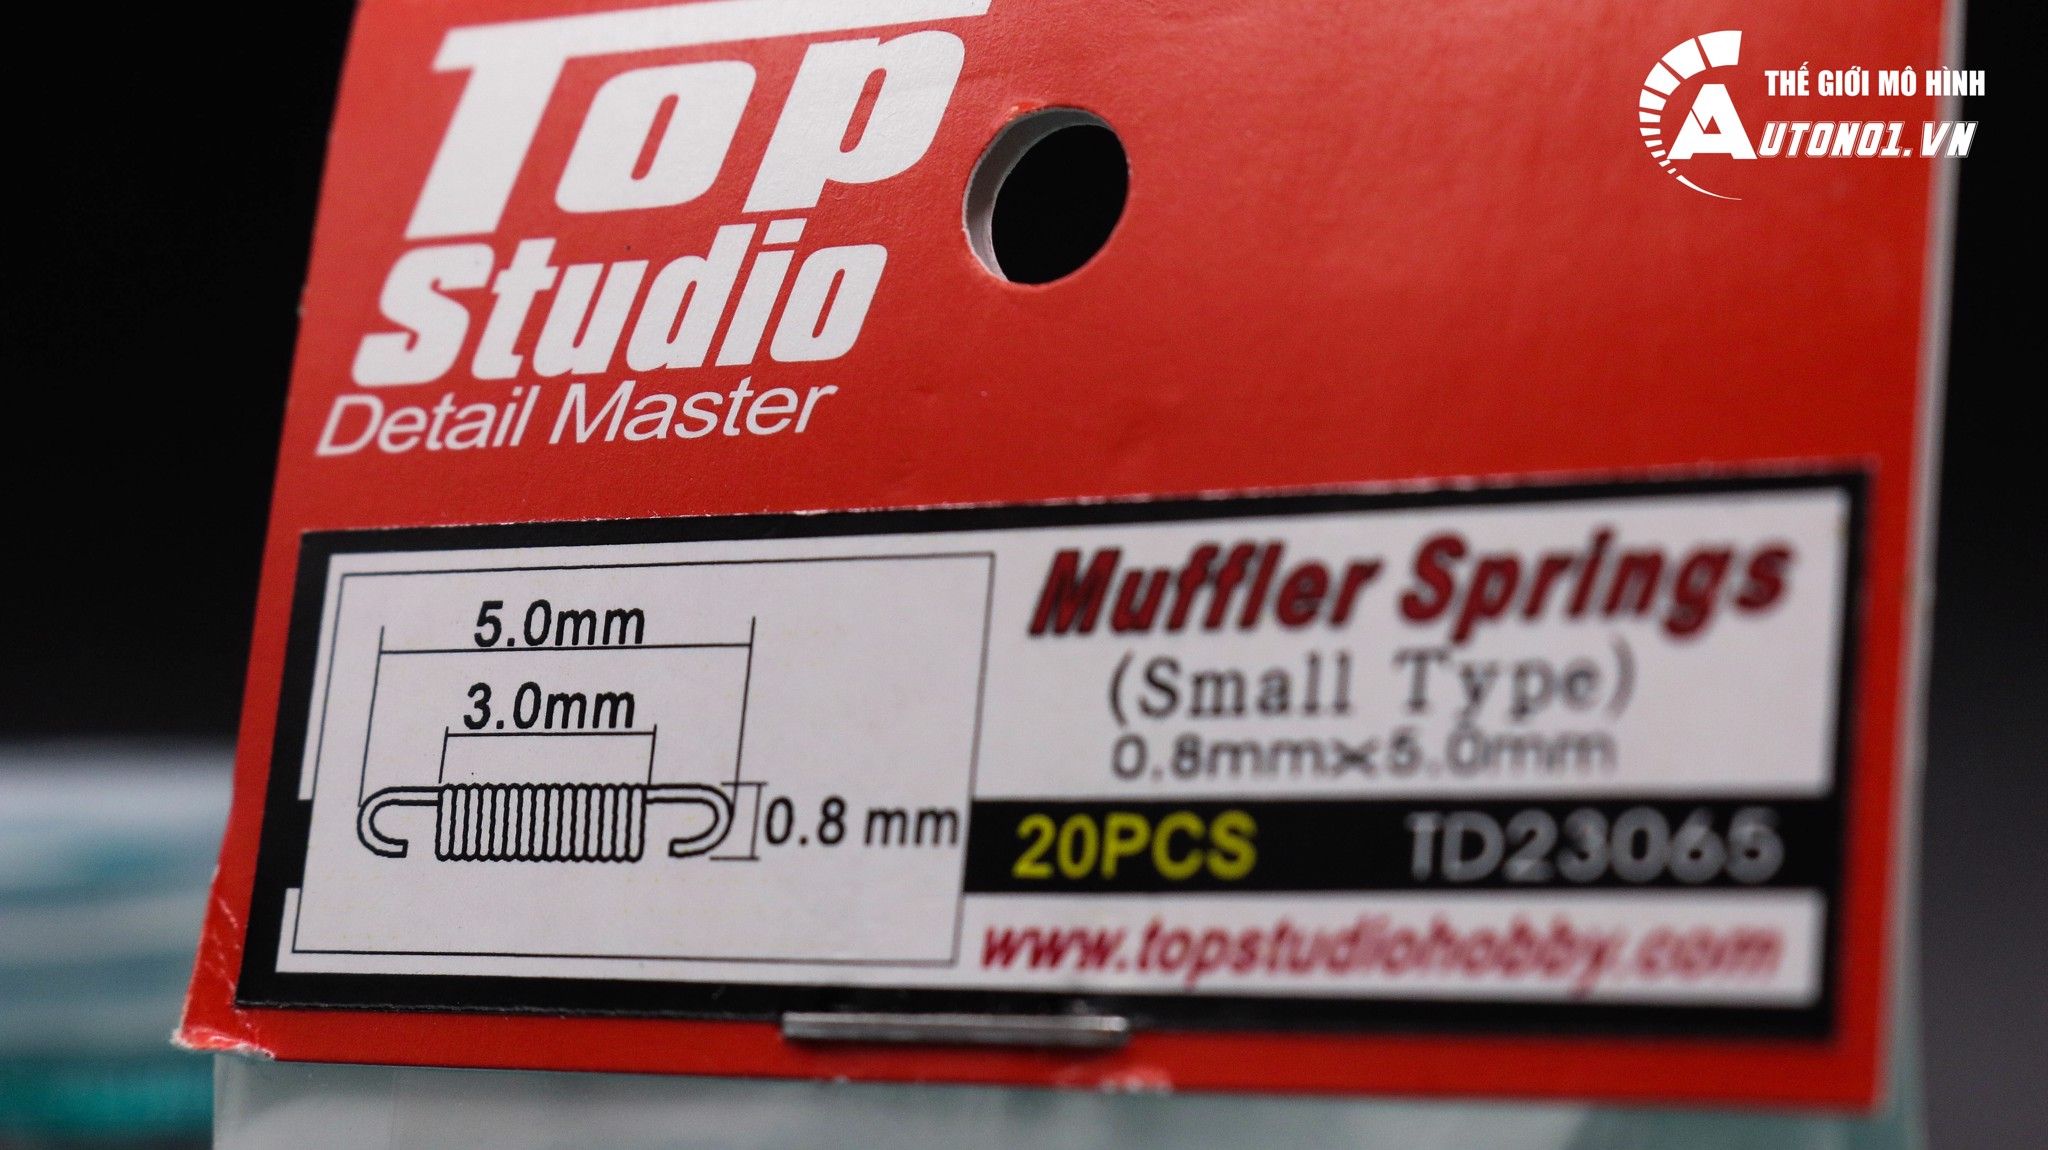  Phụ kiện lò xo pô kim loại cỡ nhỏ 5mm x 0.8mm 1:12 Top Studio 7287 